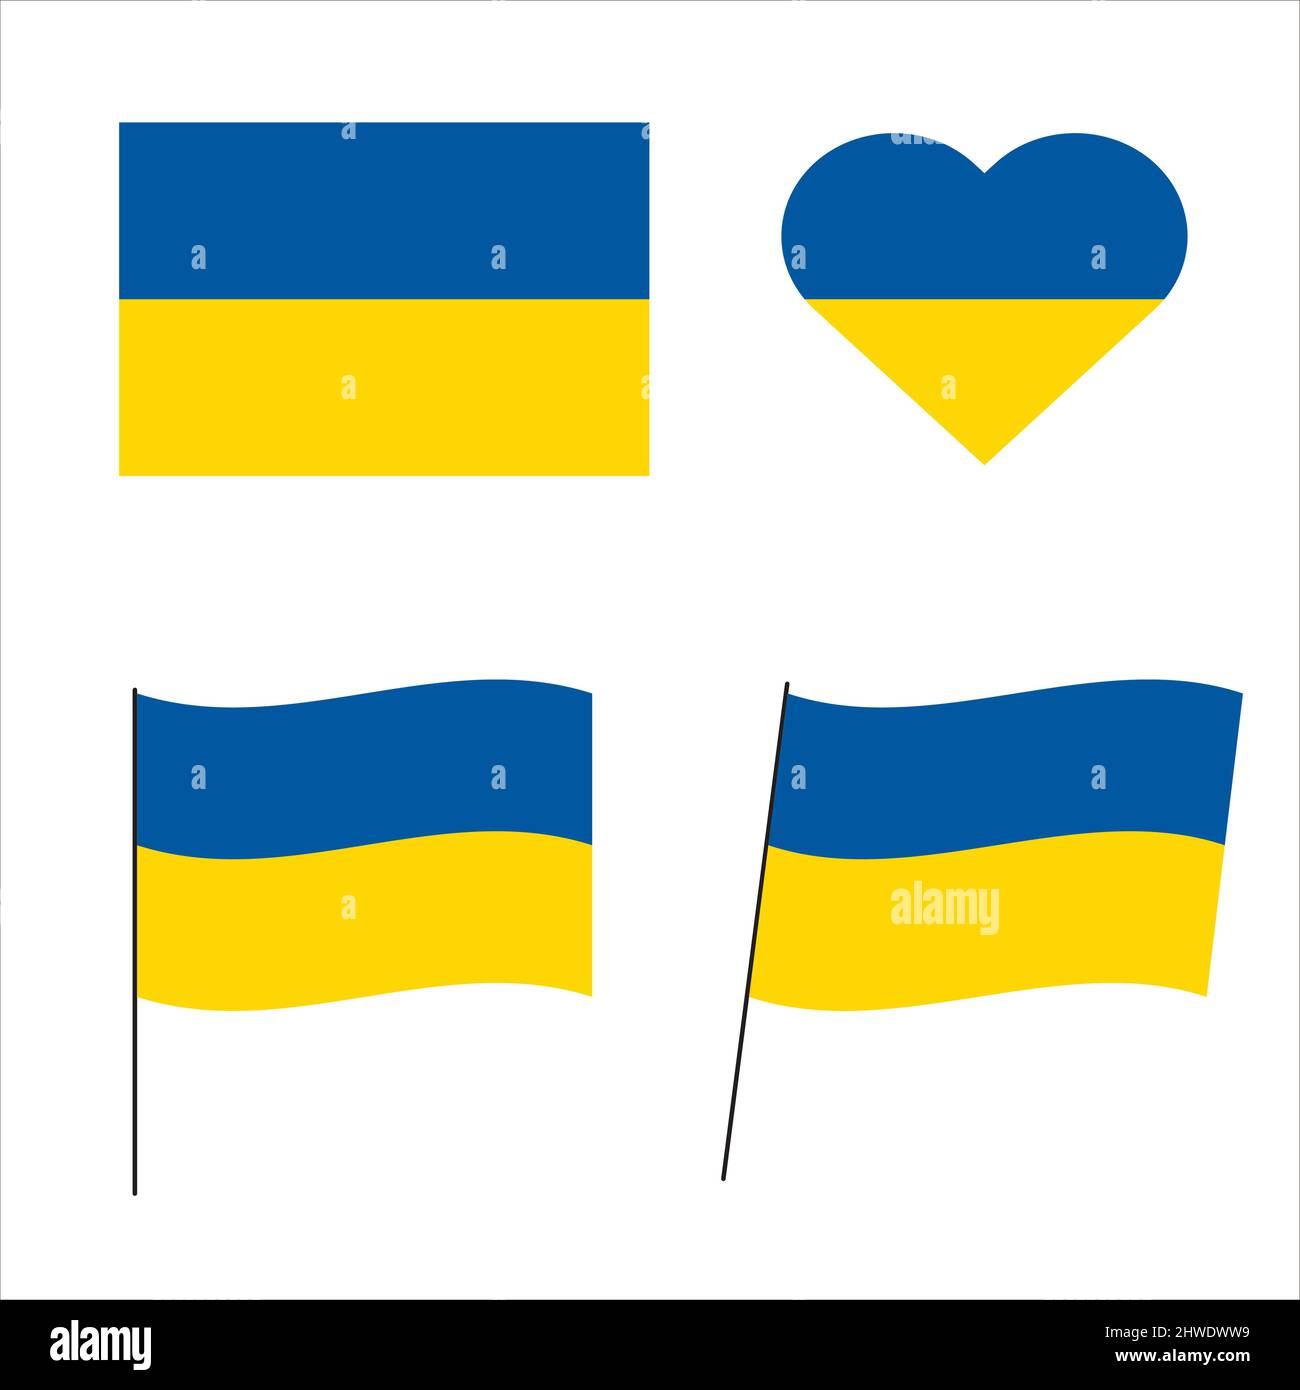 Bandiera Ucraina. Insieme di immagini vettoriali della bandiera